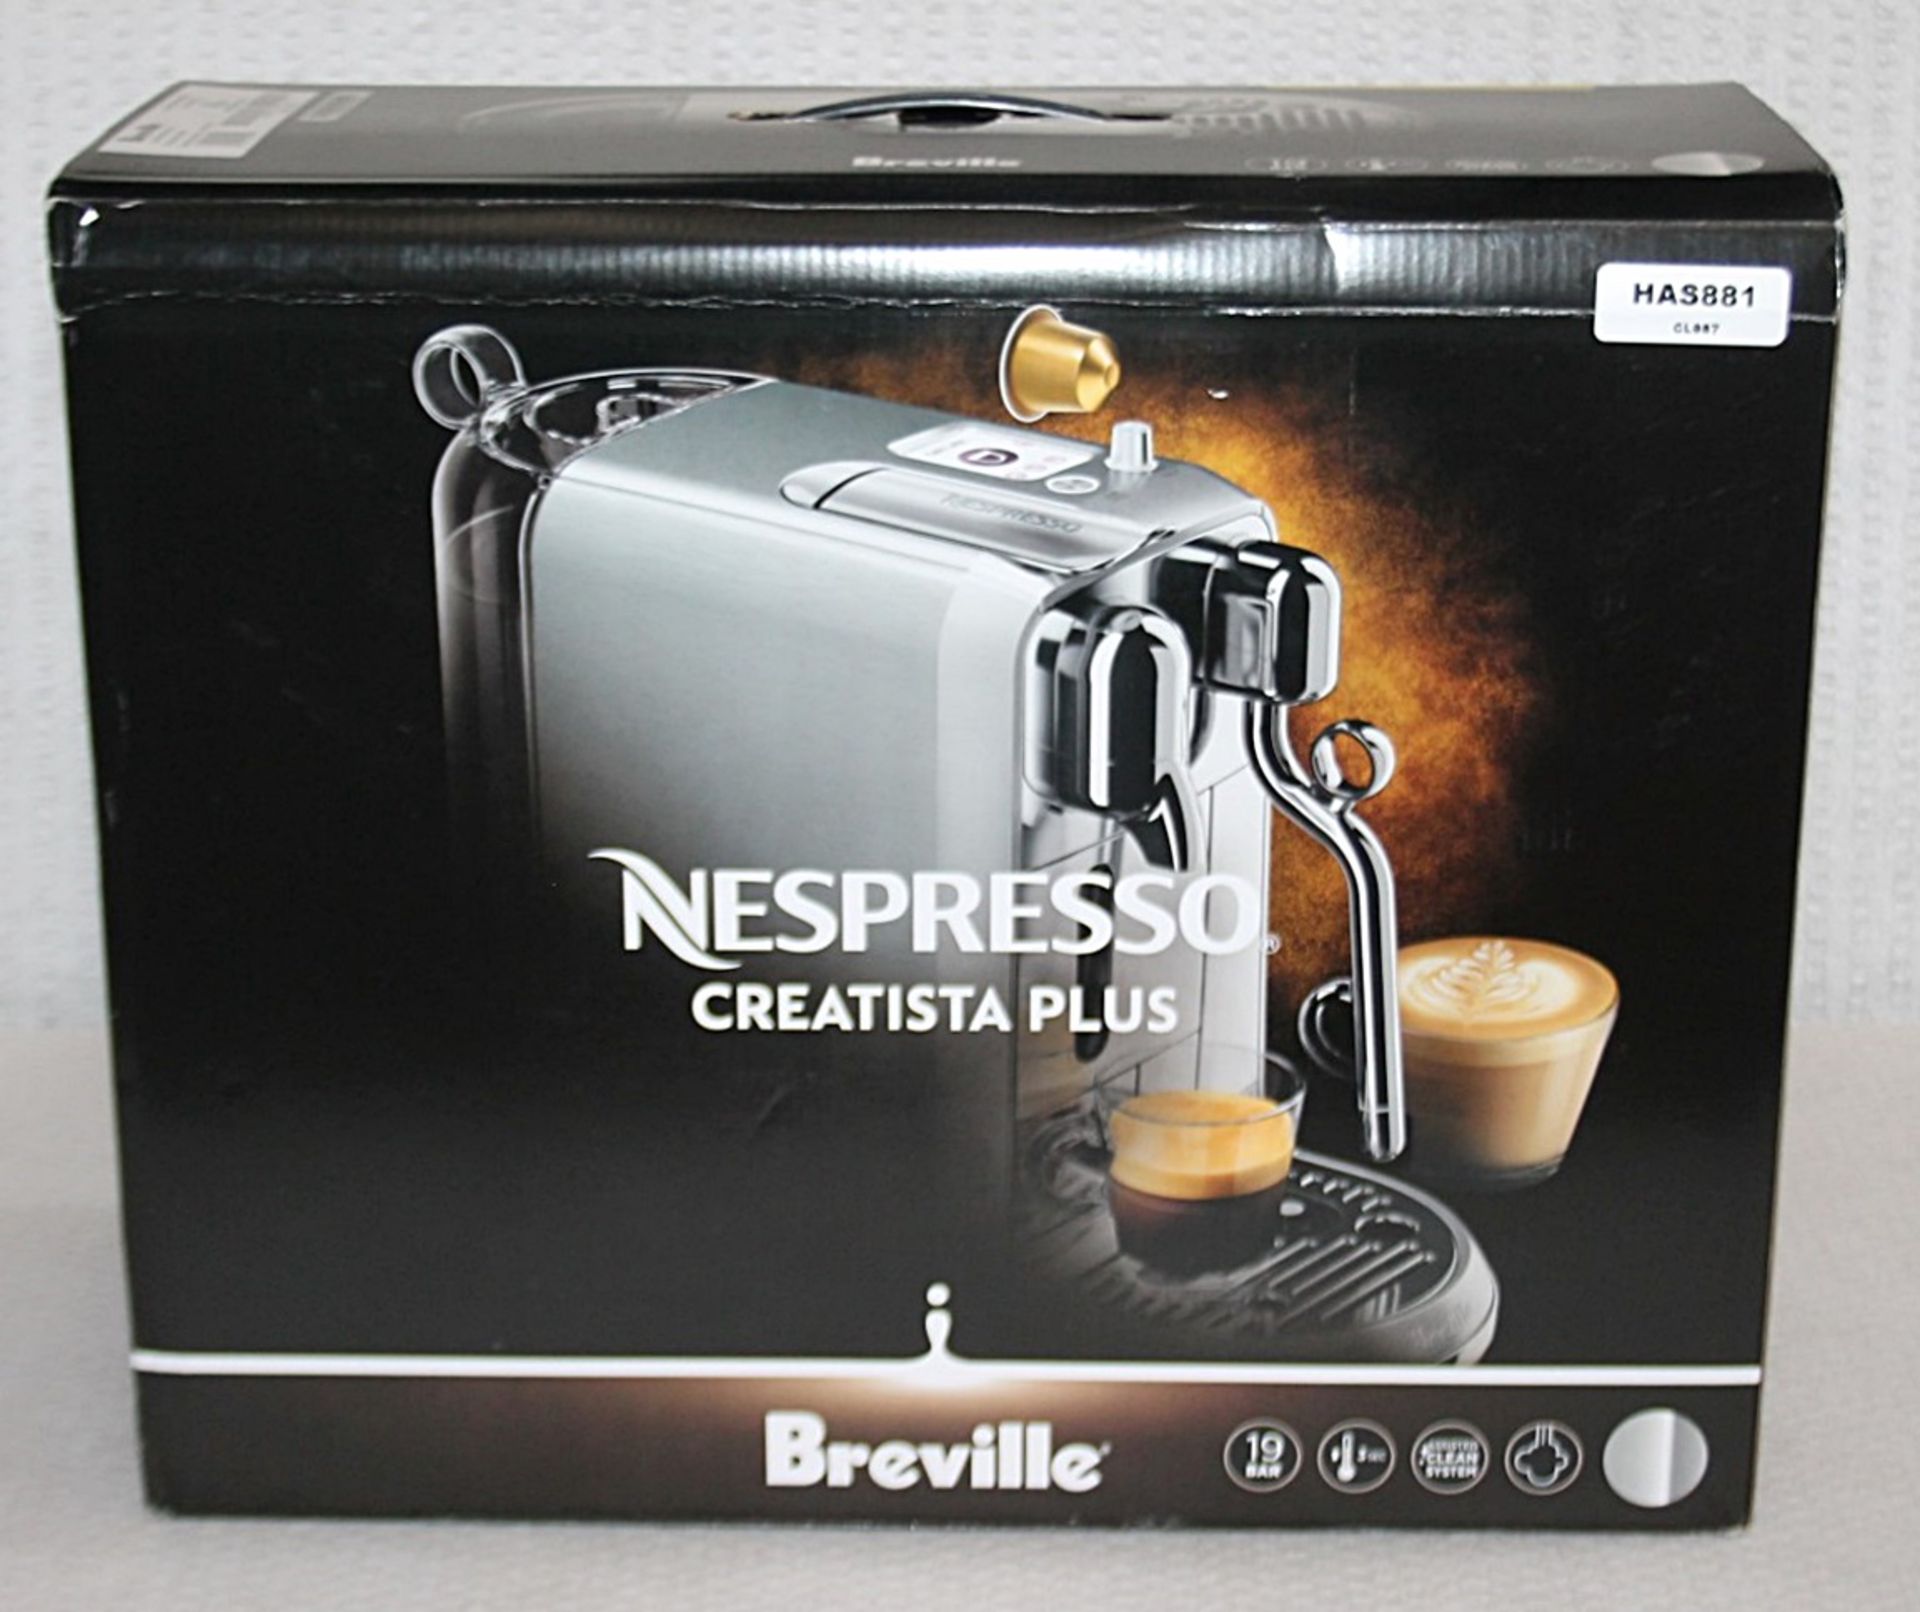 1 x NESPRESSO 'Creatista Plus' Coffee Machine In Silver - Original Price £479.95 - Boxed Stock - Image 13 of 18